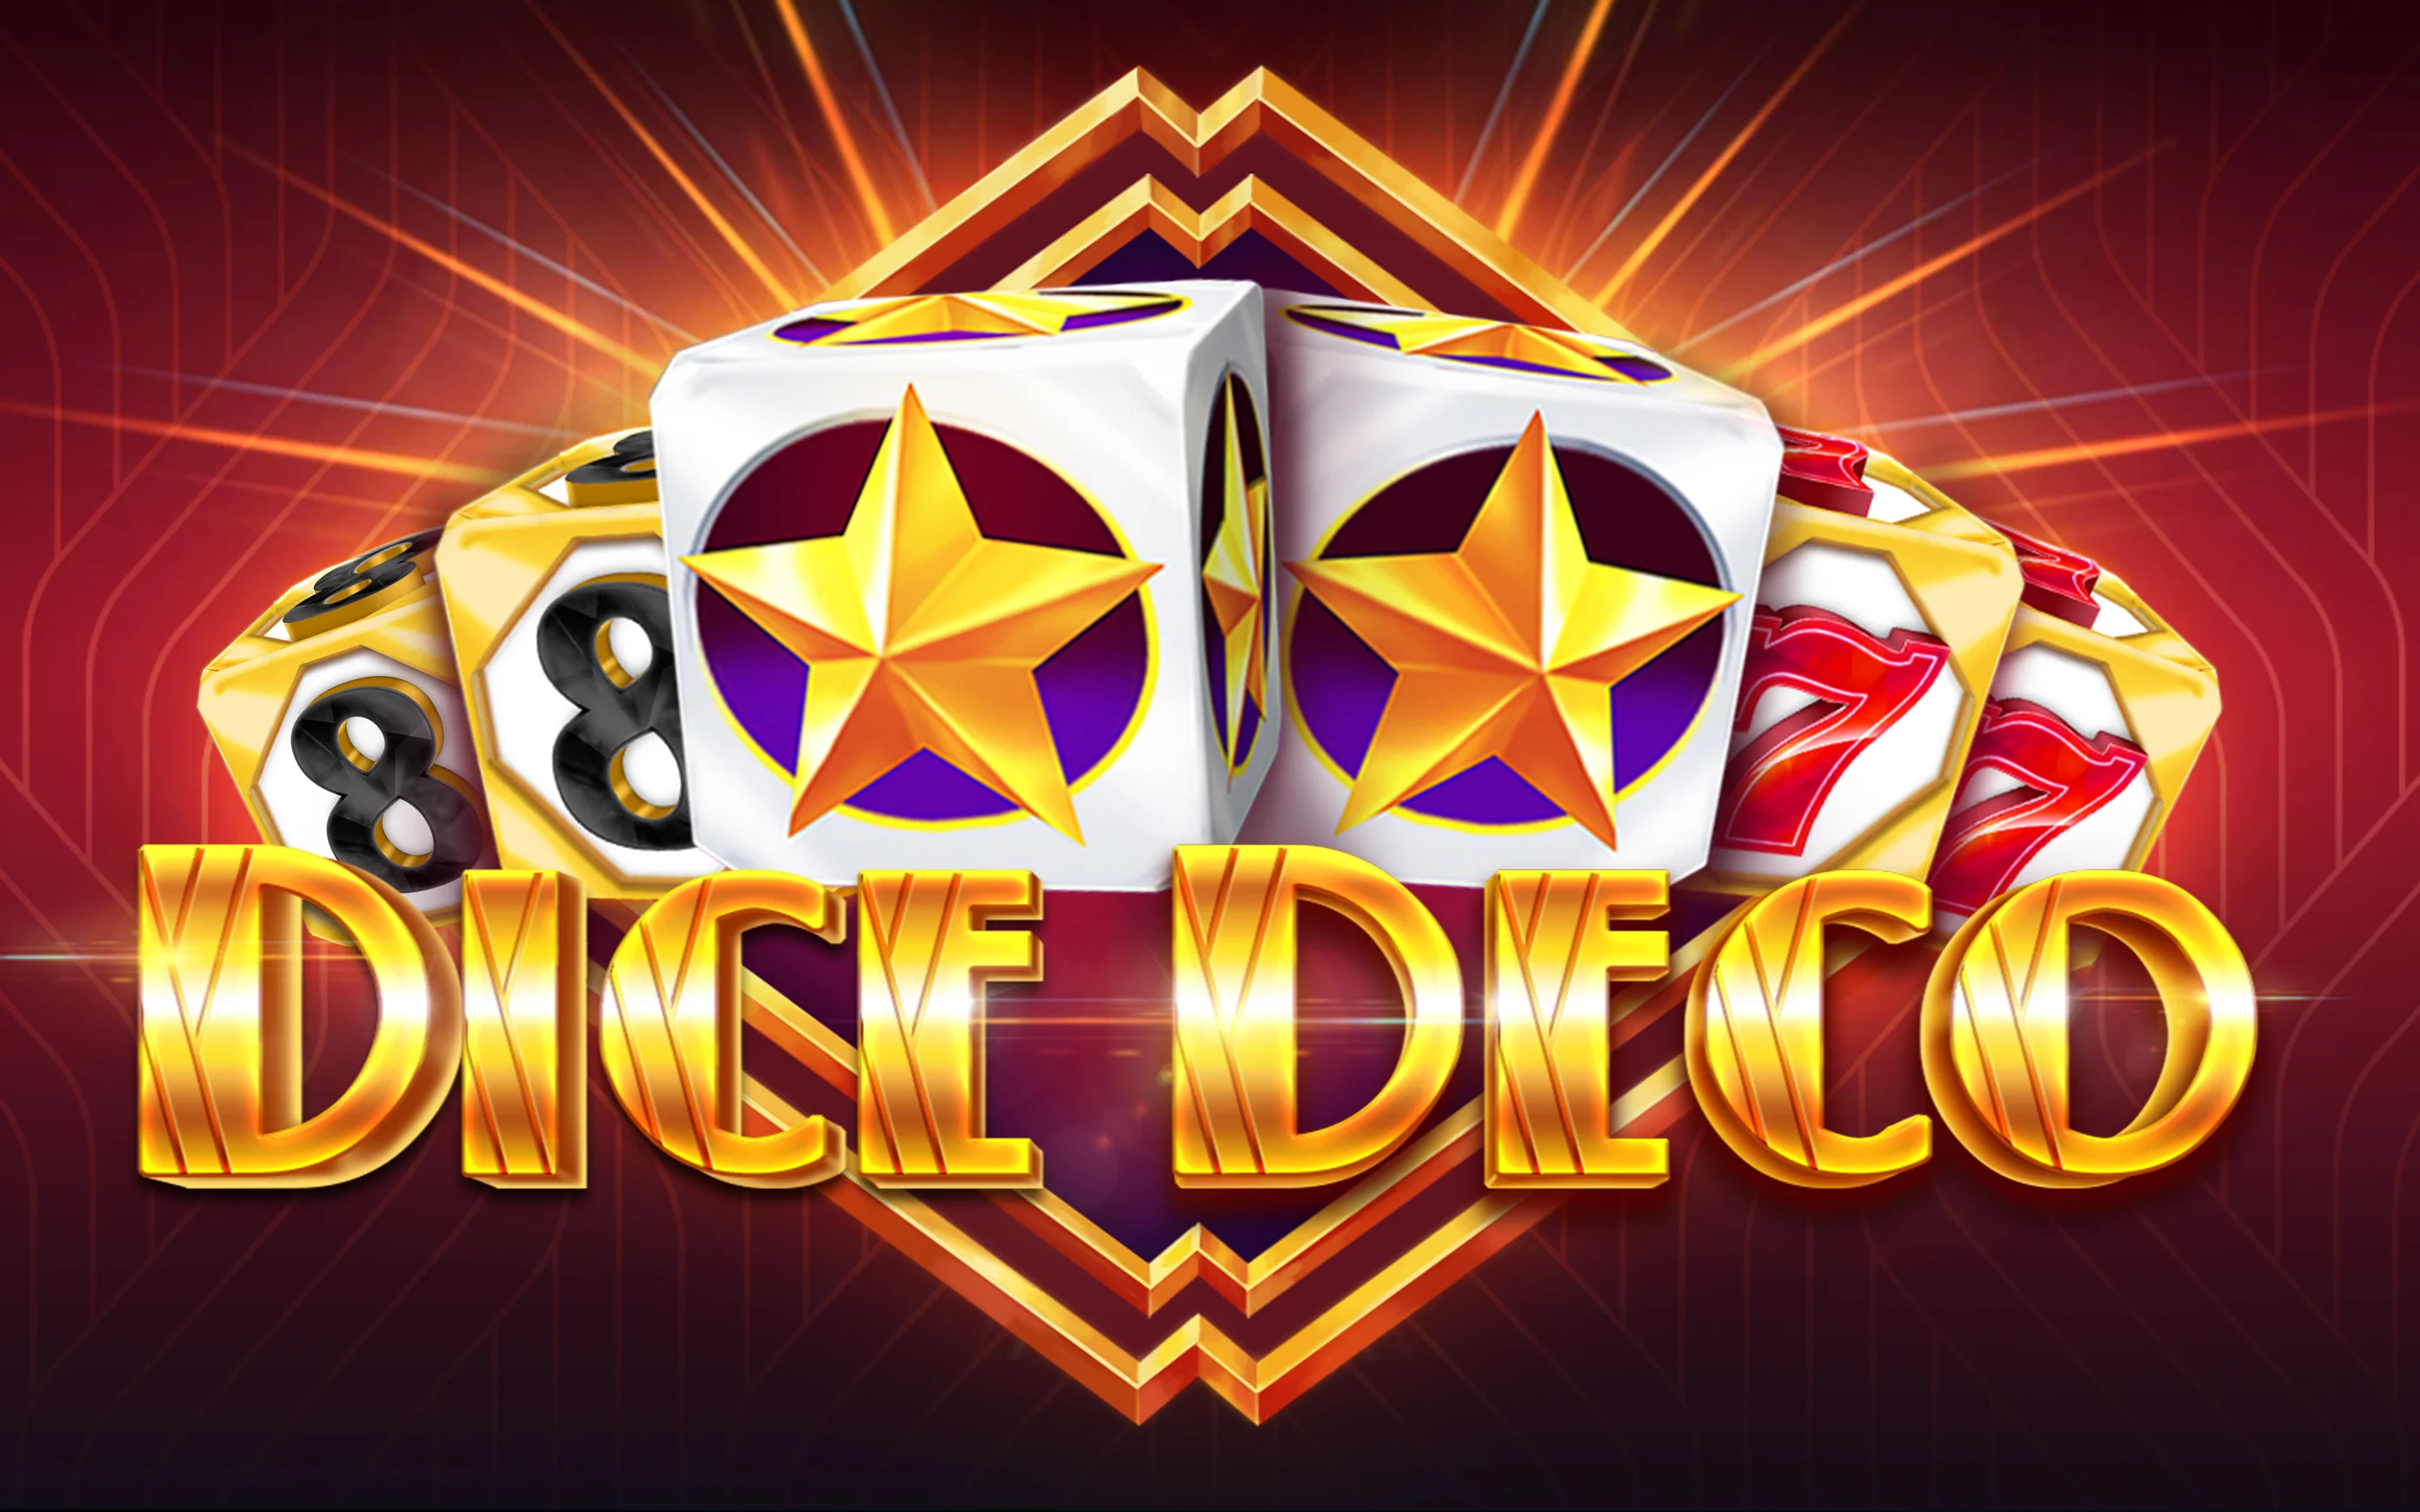 Грайте у Dice Deco в онлайн-казино Starcasino.be